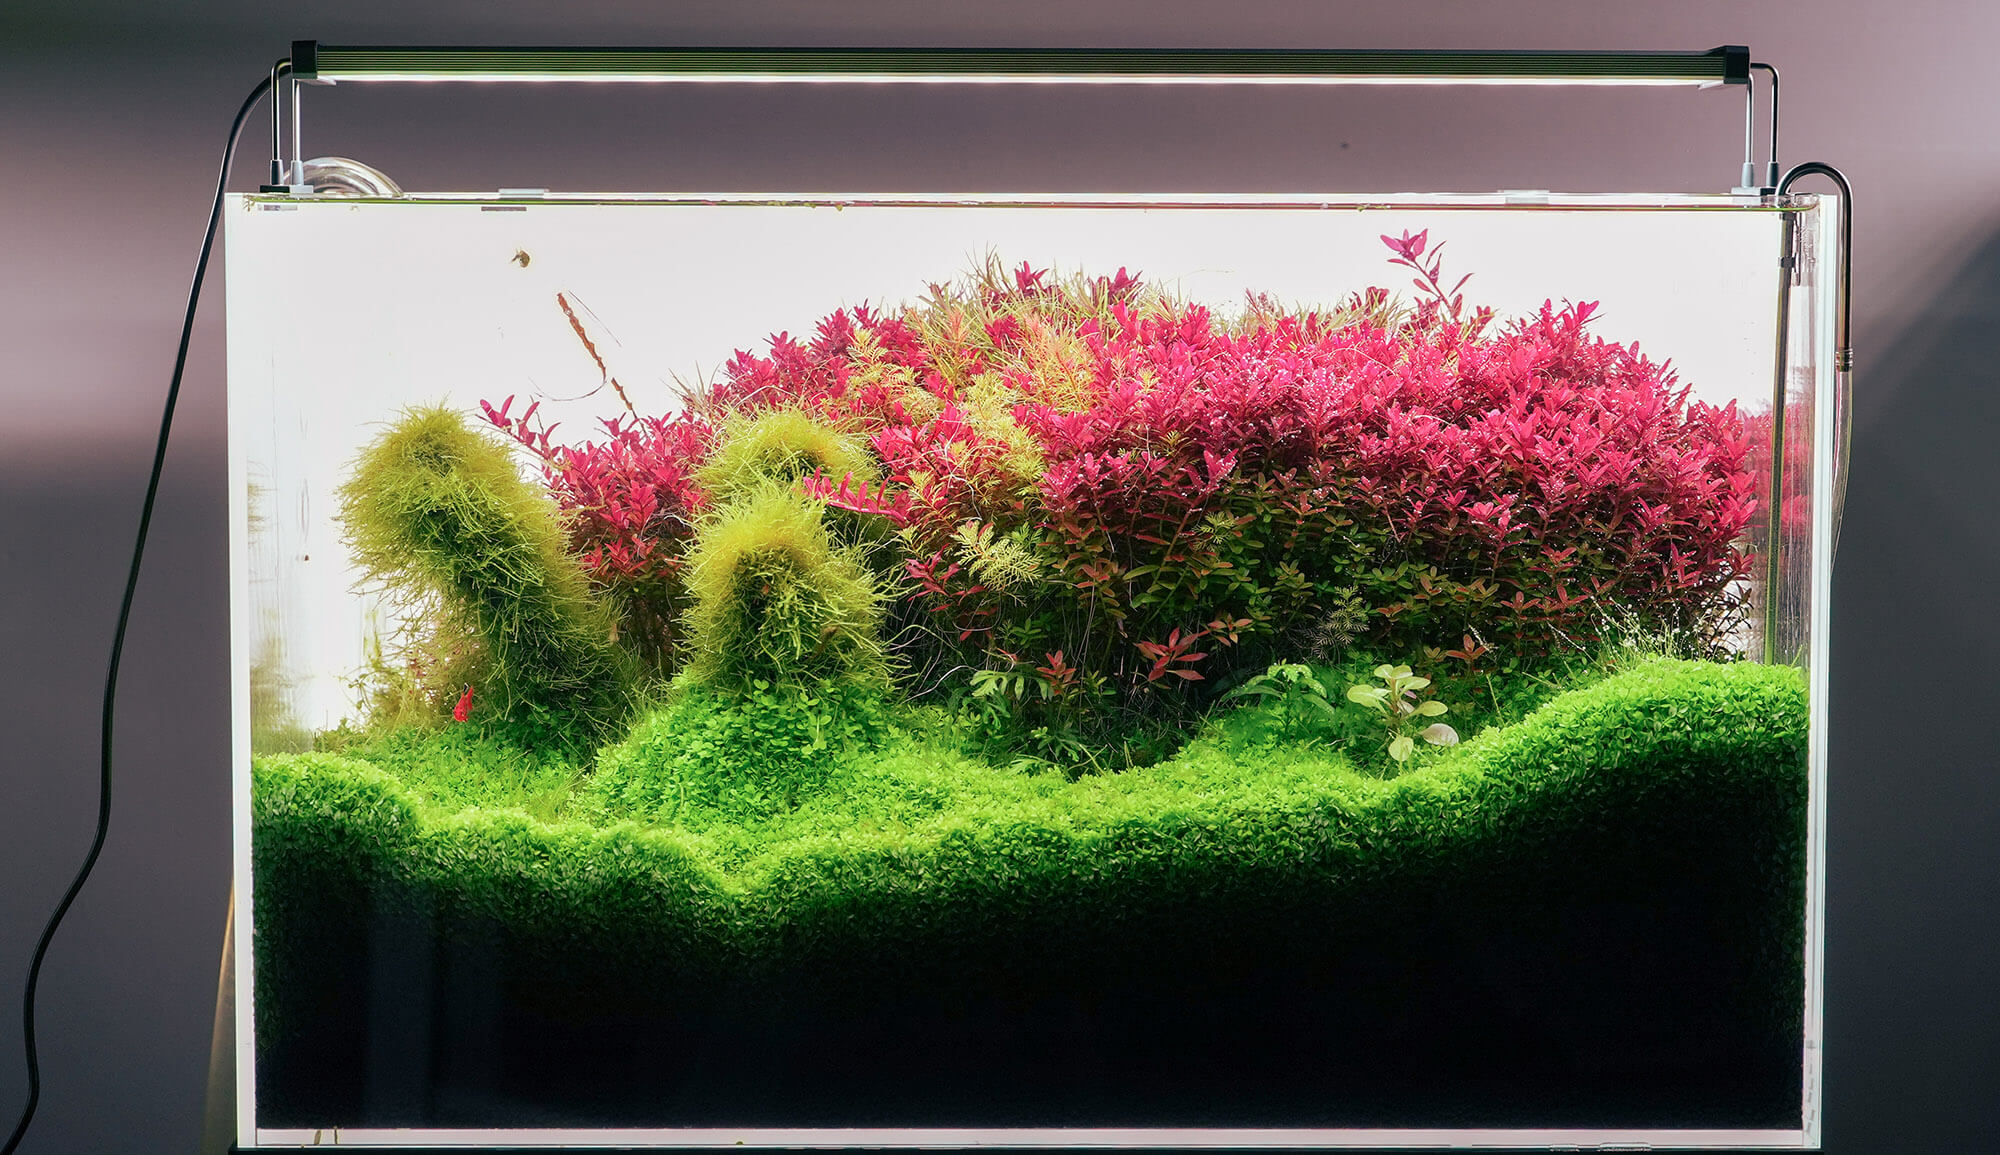 Chihiros LED System Serie B Farbwiedergabe von Aquarienpflanzen